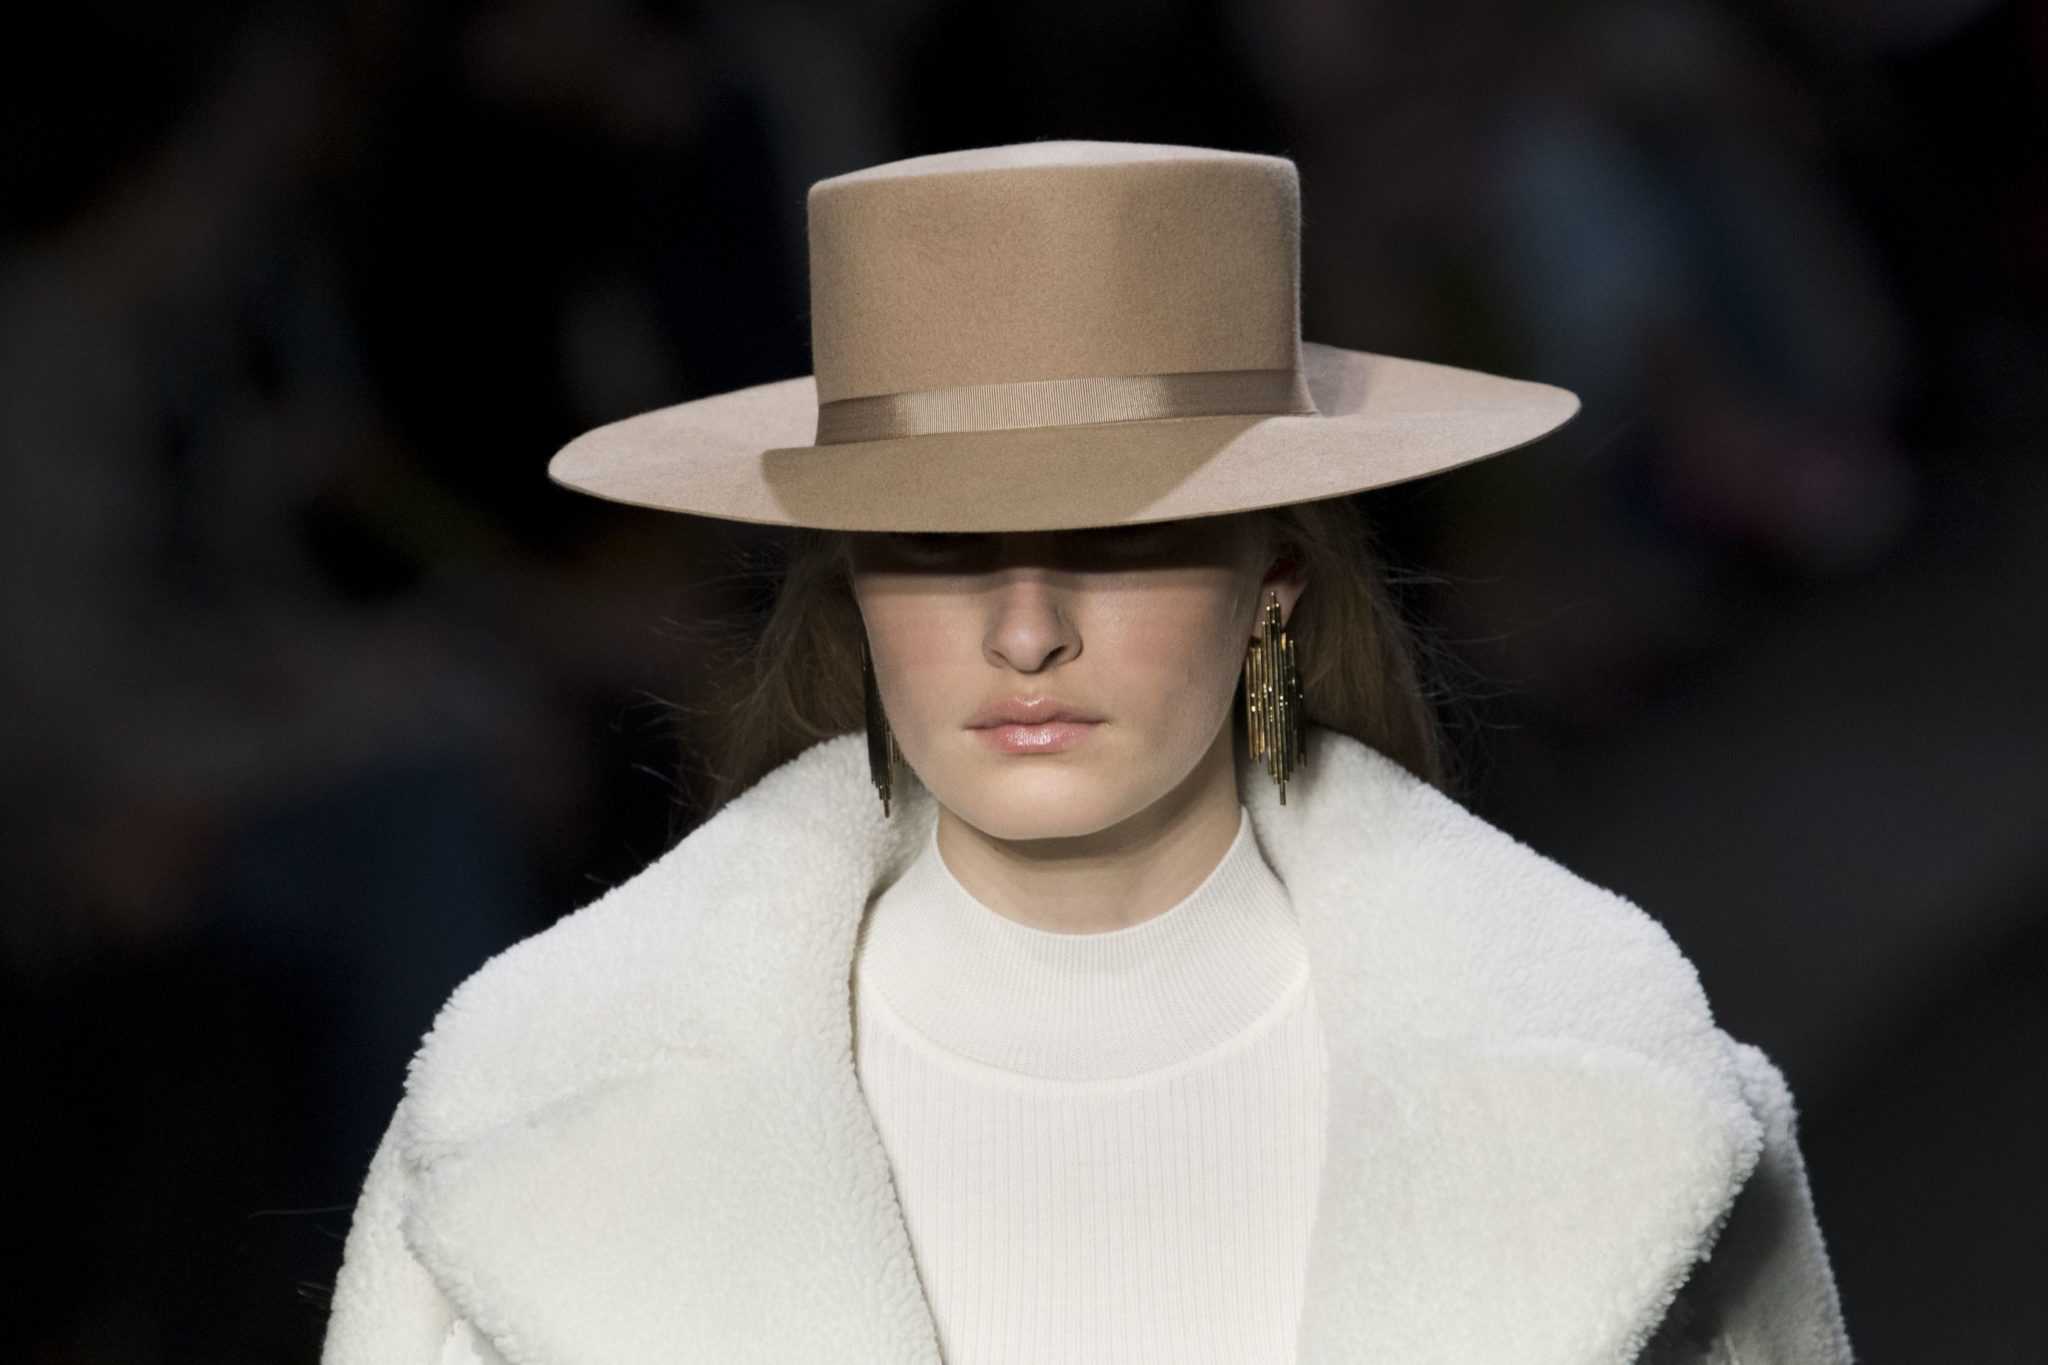 Ах, какая шляпка: 30 ретро фотографий загадочных дам в широкополых шляпах